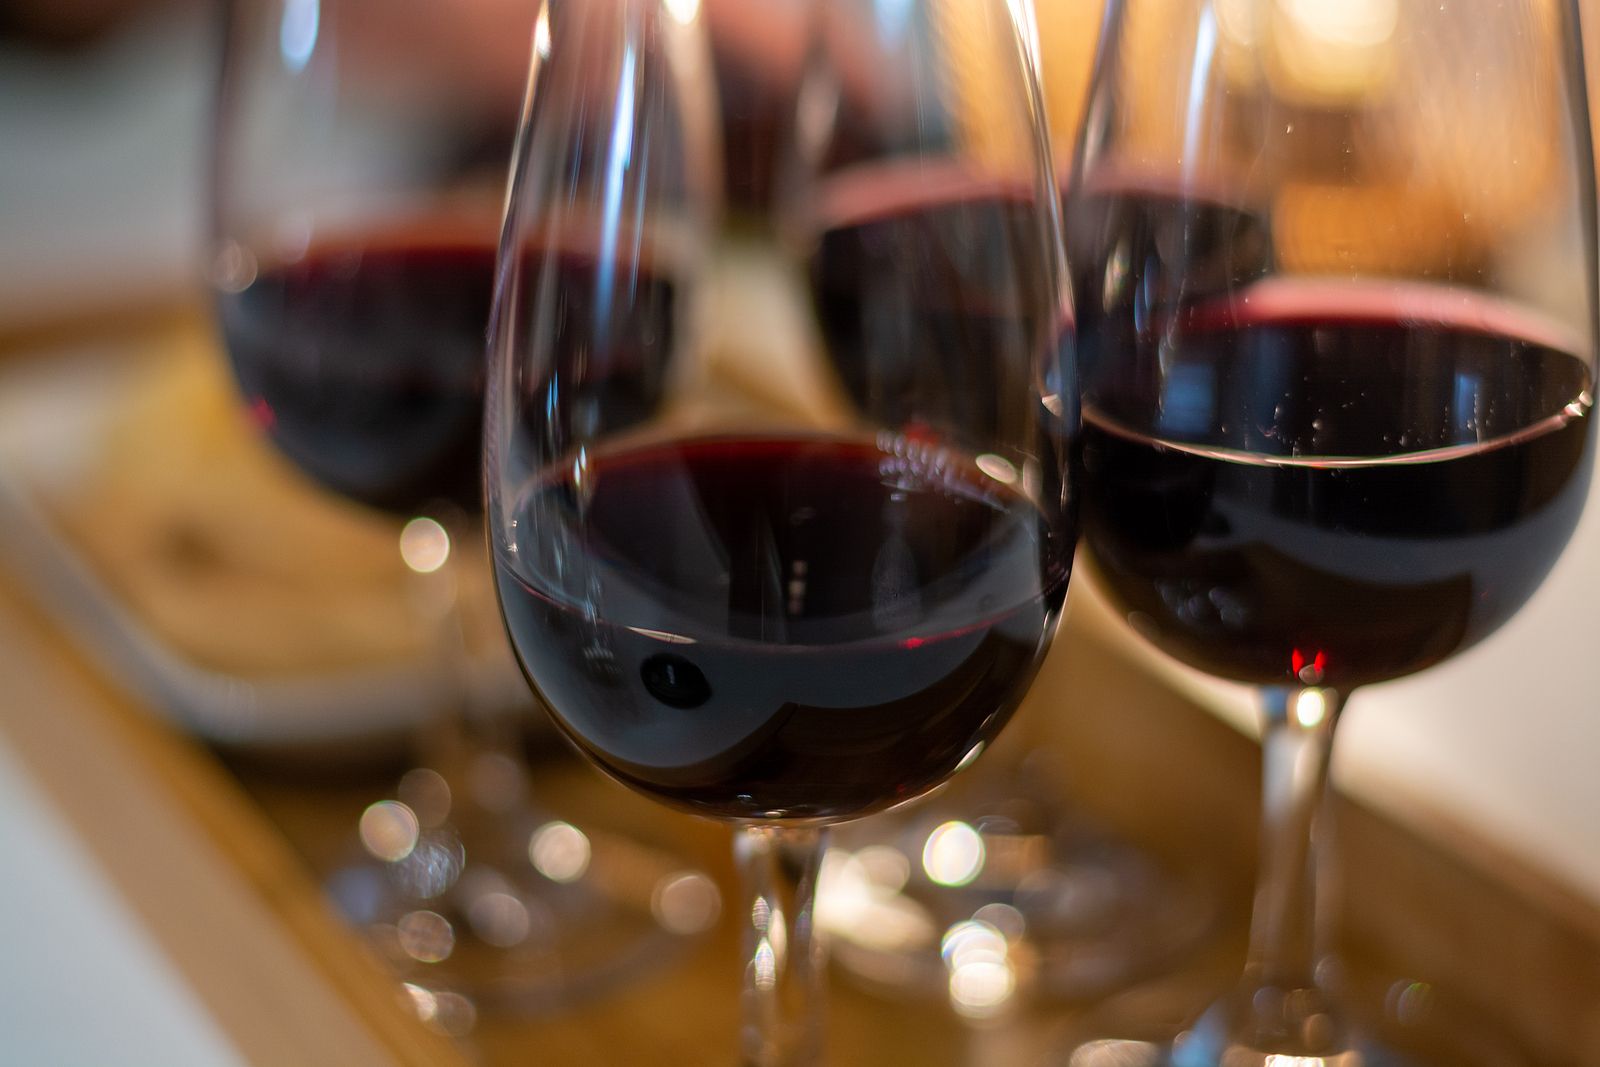 La Guía Peñín otorga la máxima puntuación a estos 8 vinos españoles